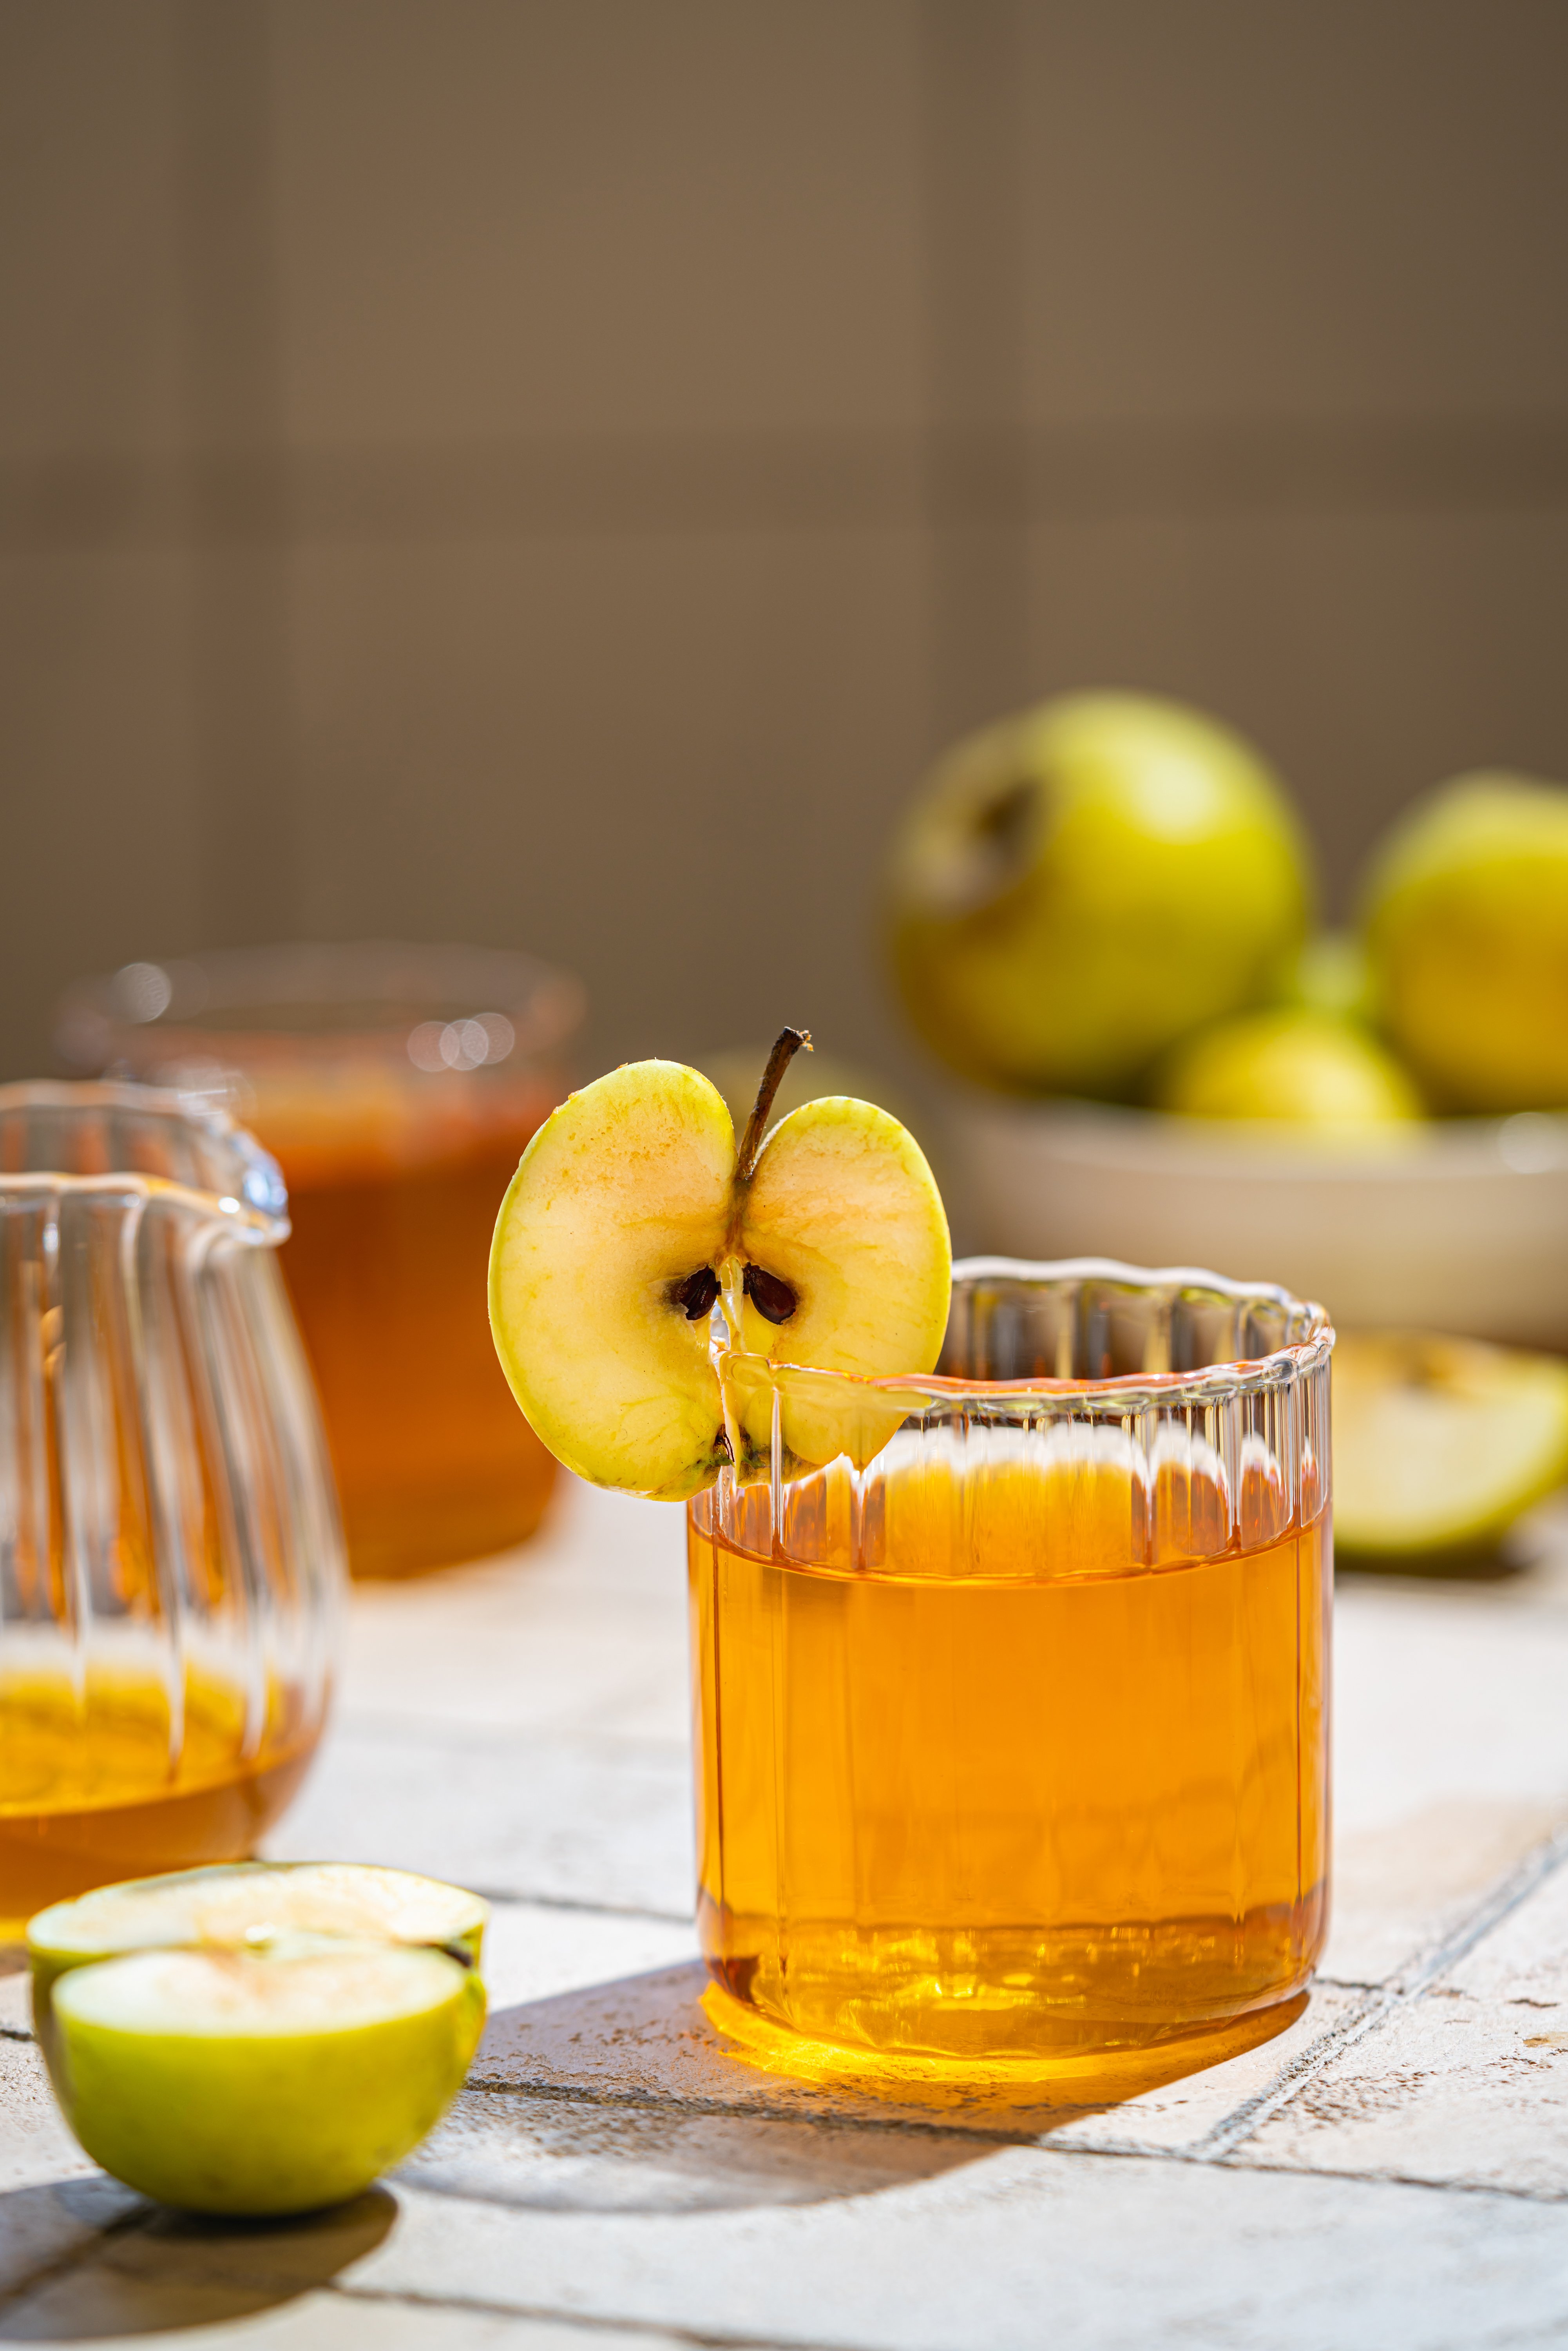  Πως το μηλόξυδο βοηθάει στην απώλεια βάρους; -Τα 4 Tips για σωστή χρήση!